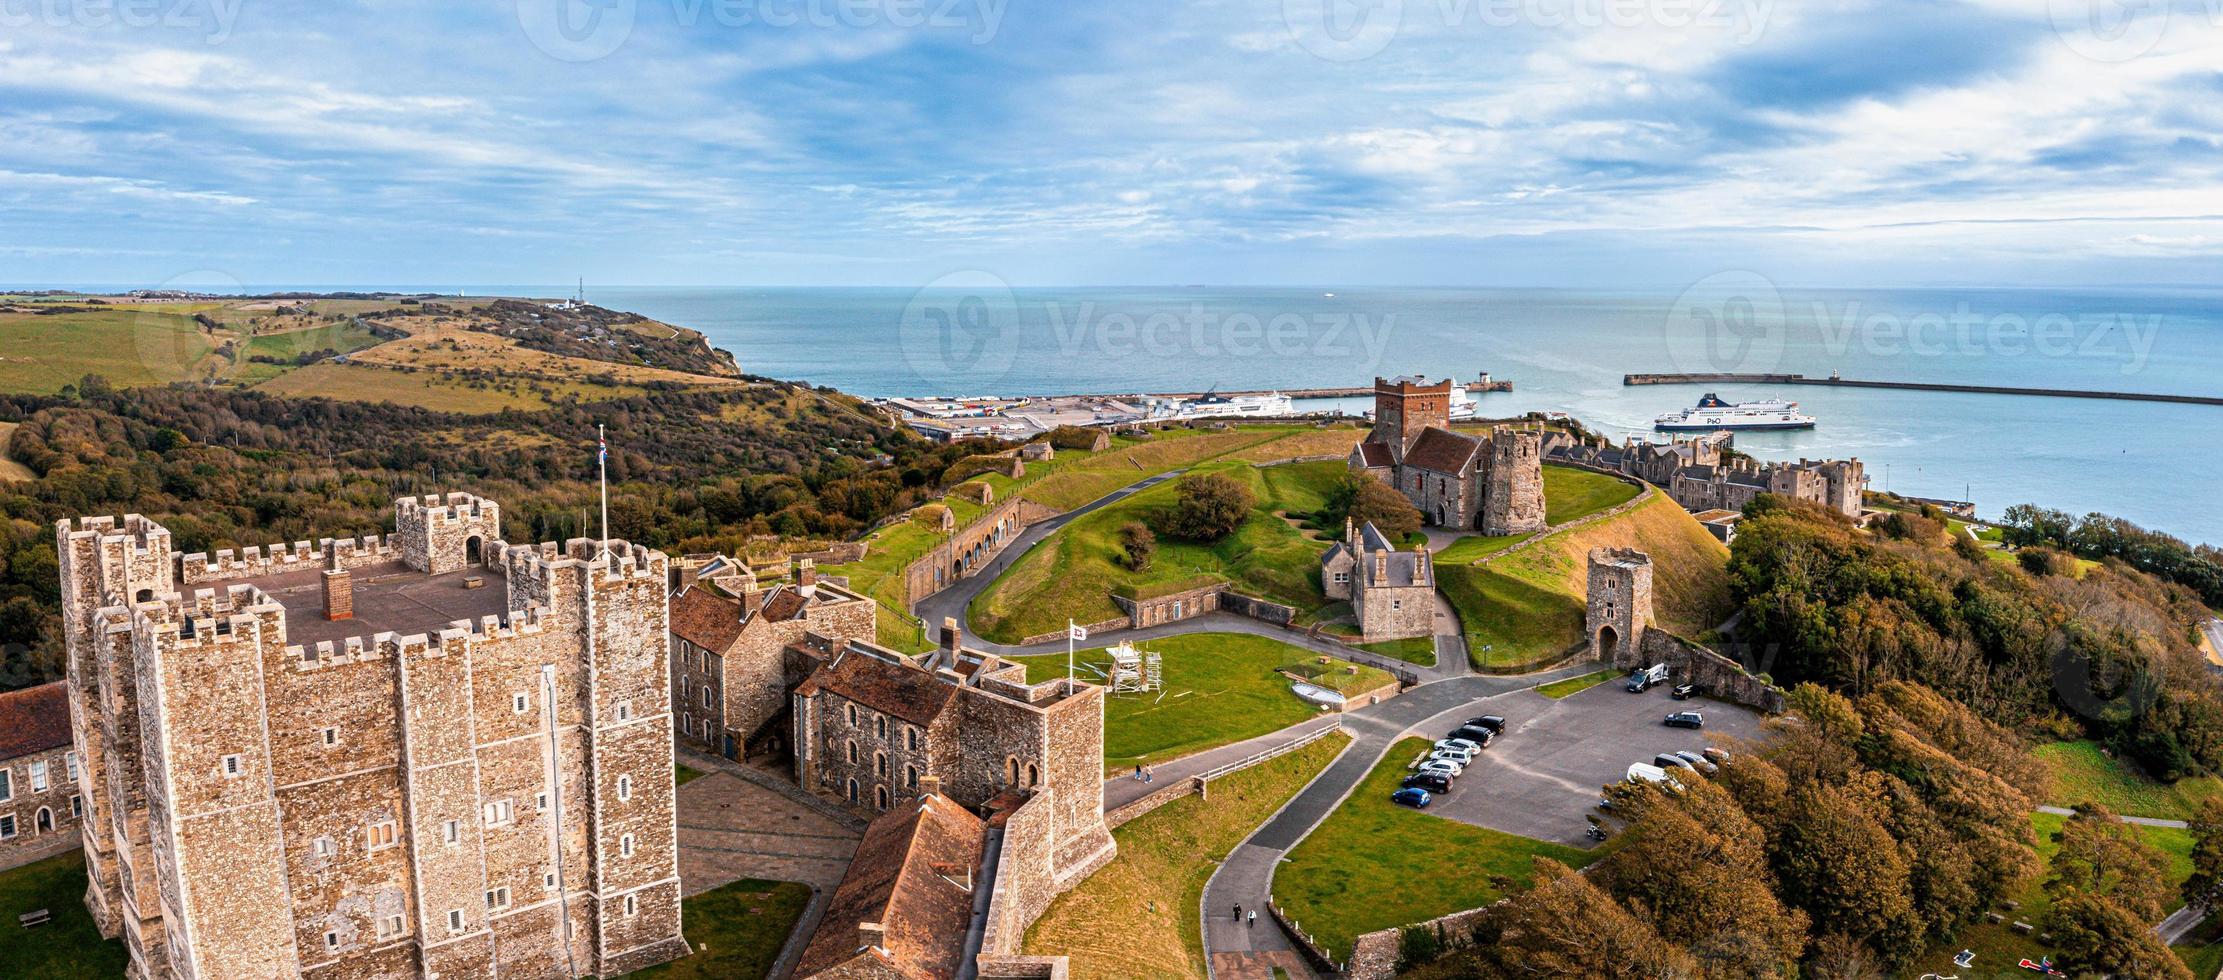 vista aérea del castillo de dover. la más icónica de todas las fortalezas inglesas. foto